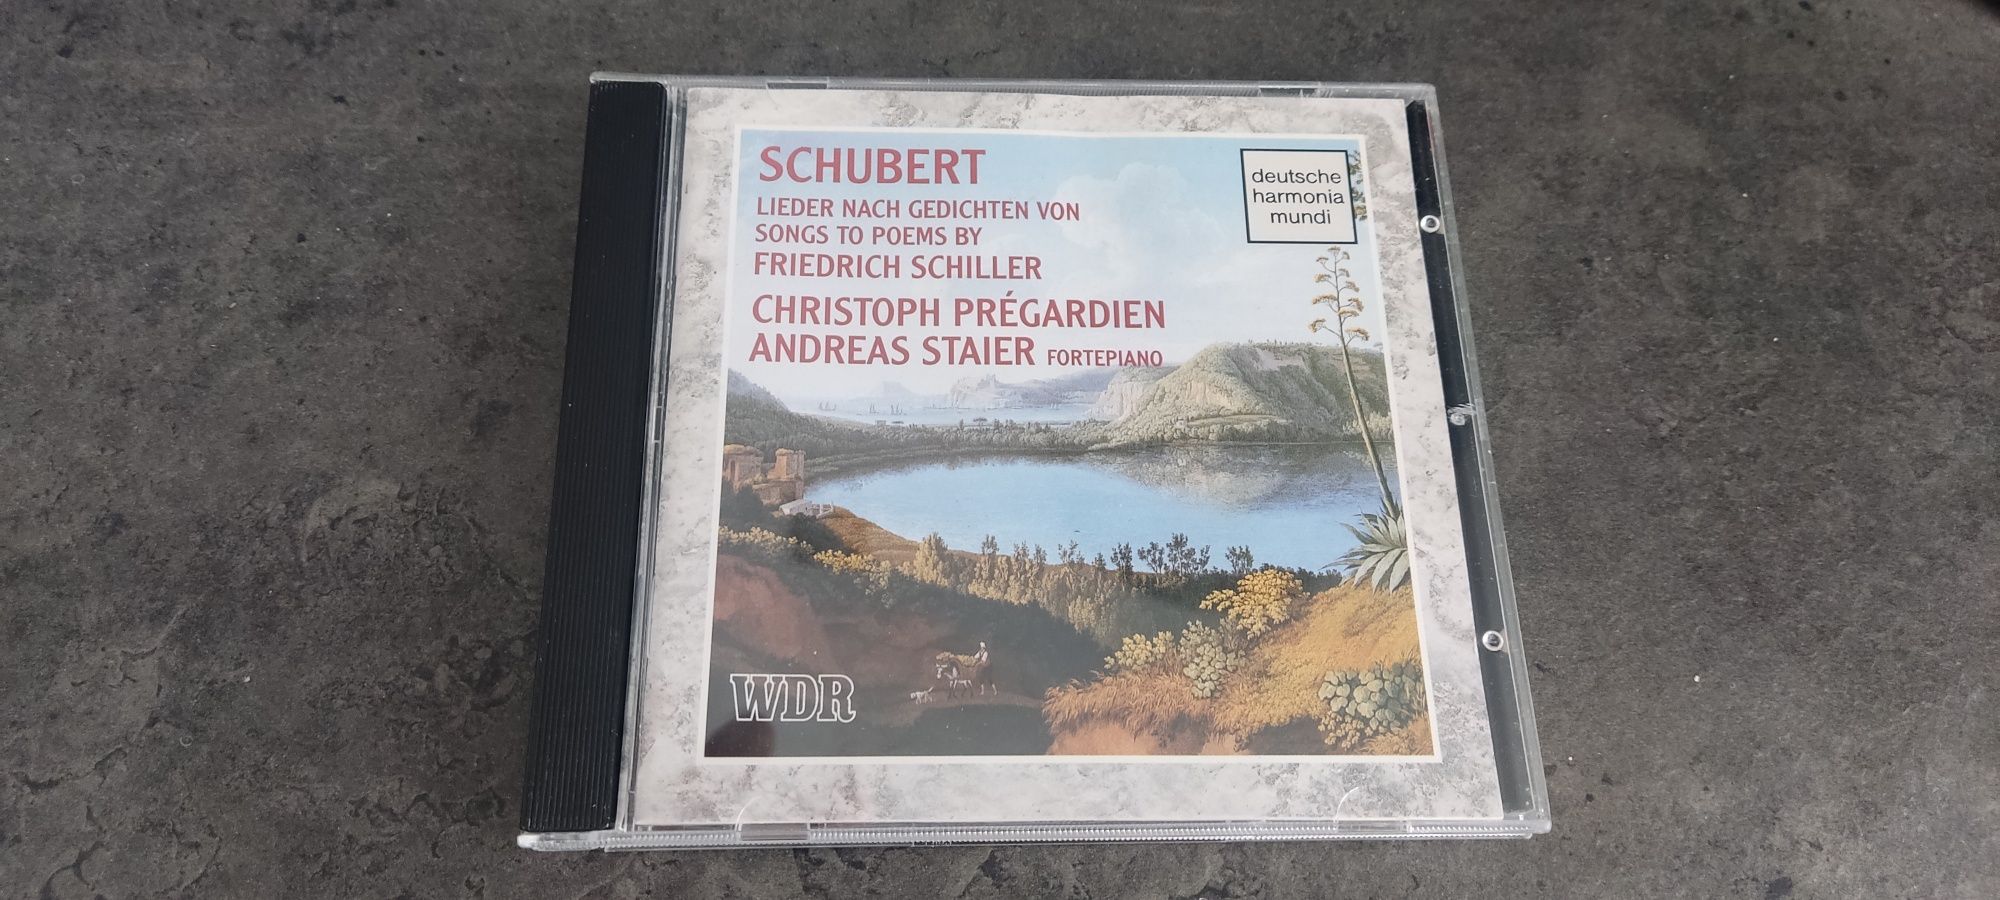 Shubert Lieder CD Schiller Pregardien Staier Deutsche Harmonia Mundi